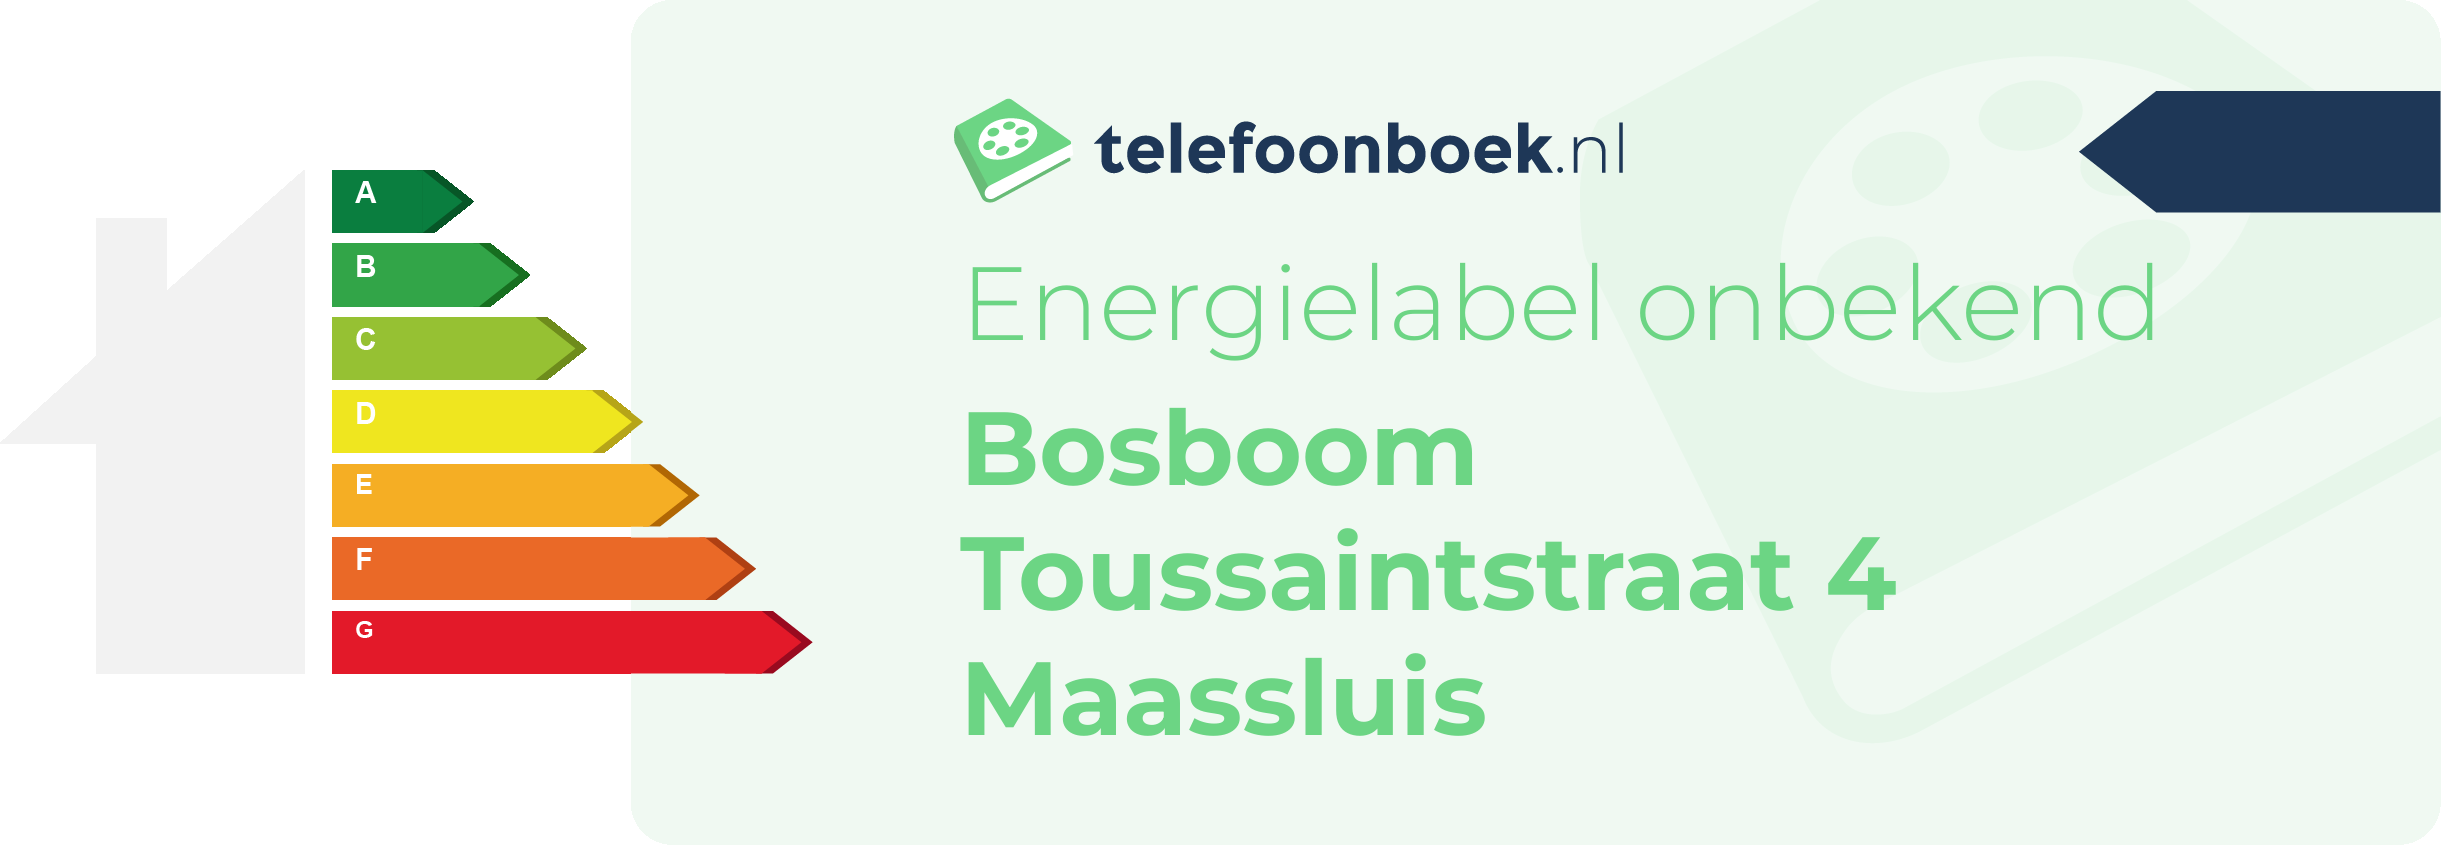 Energielabel Bosboom Toussaintstraat 4 Maassluis